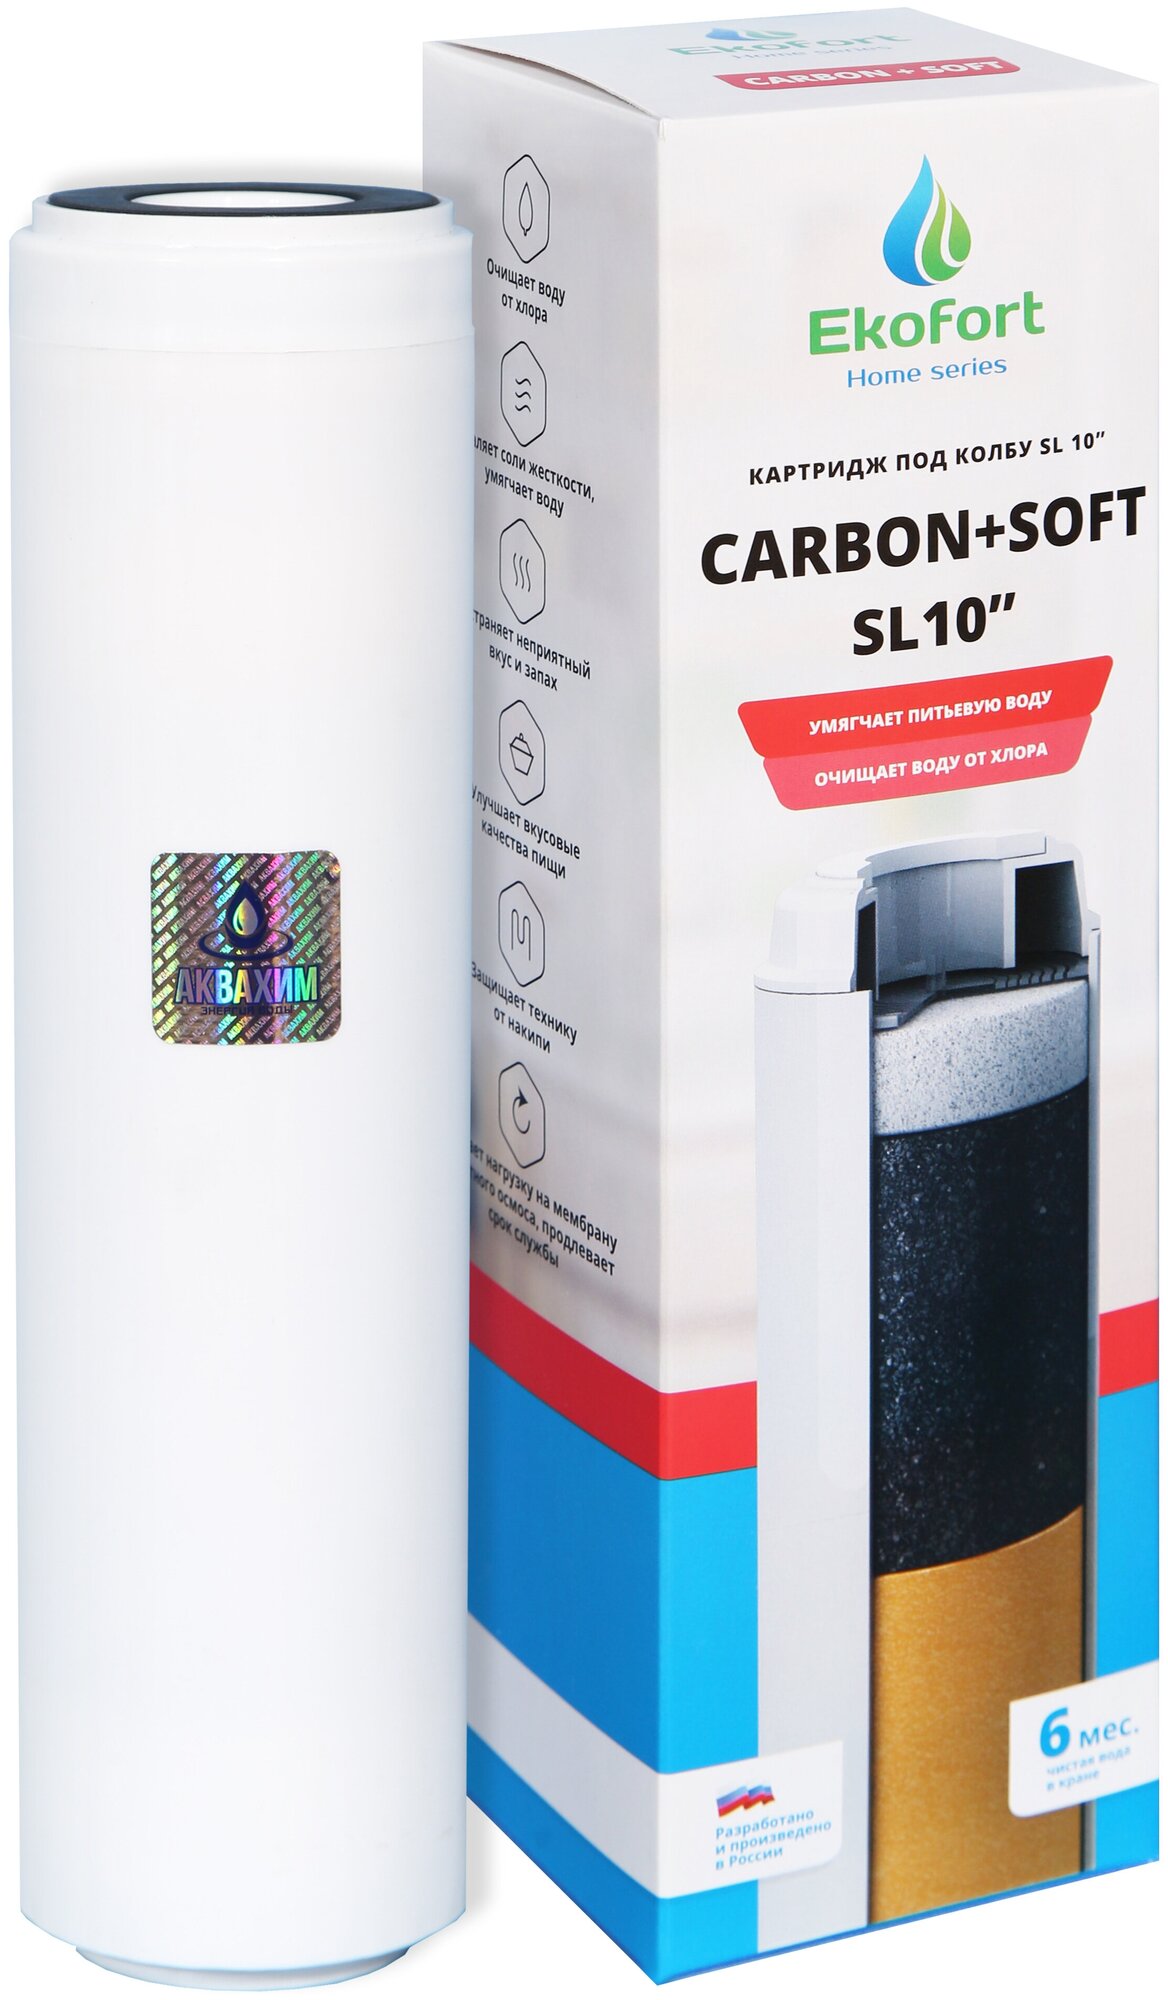 Картридж комбинированный для очистки воды SL 10 Ekofort Home Series Carbon + Soft